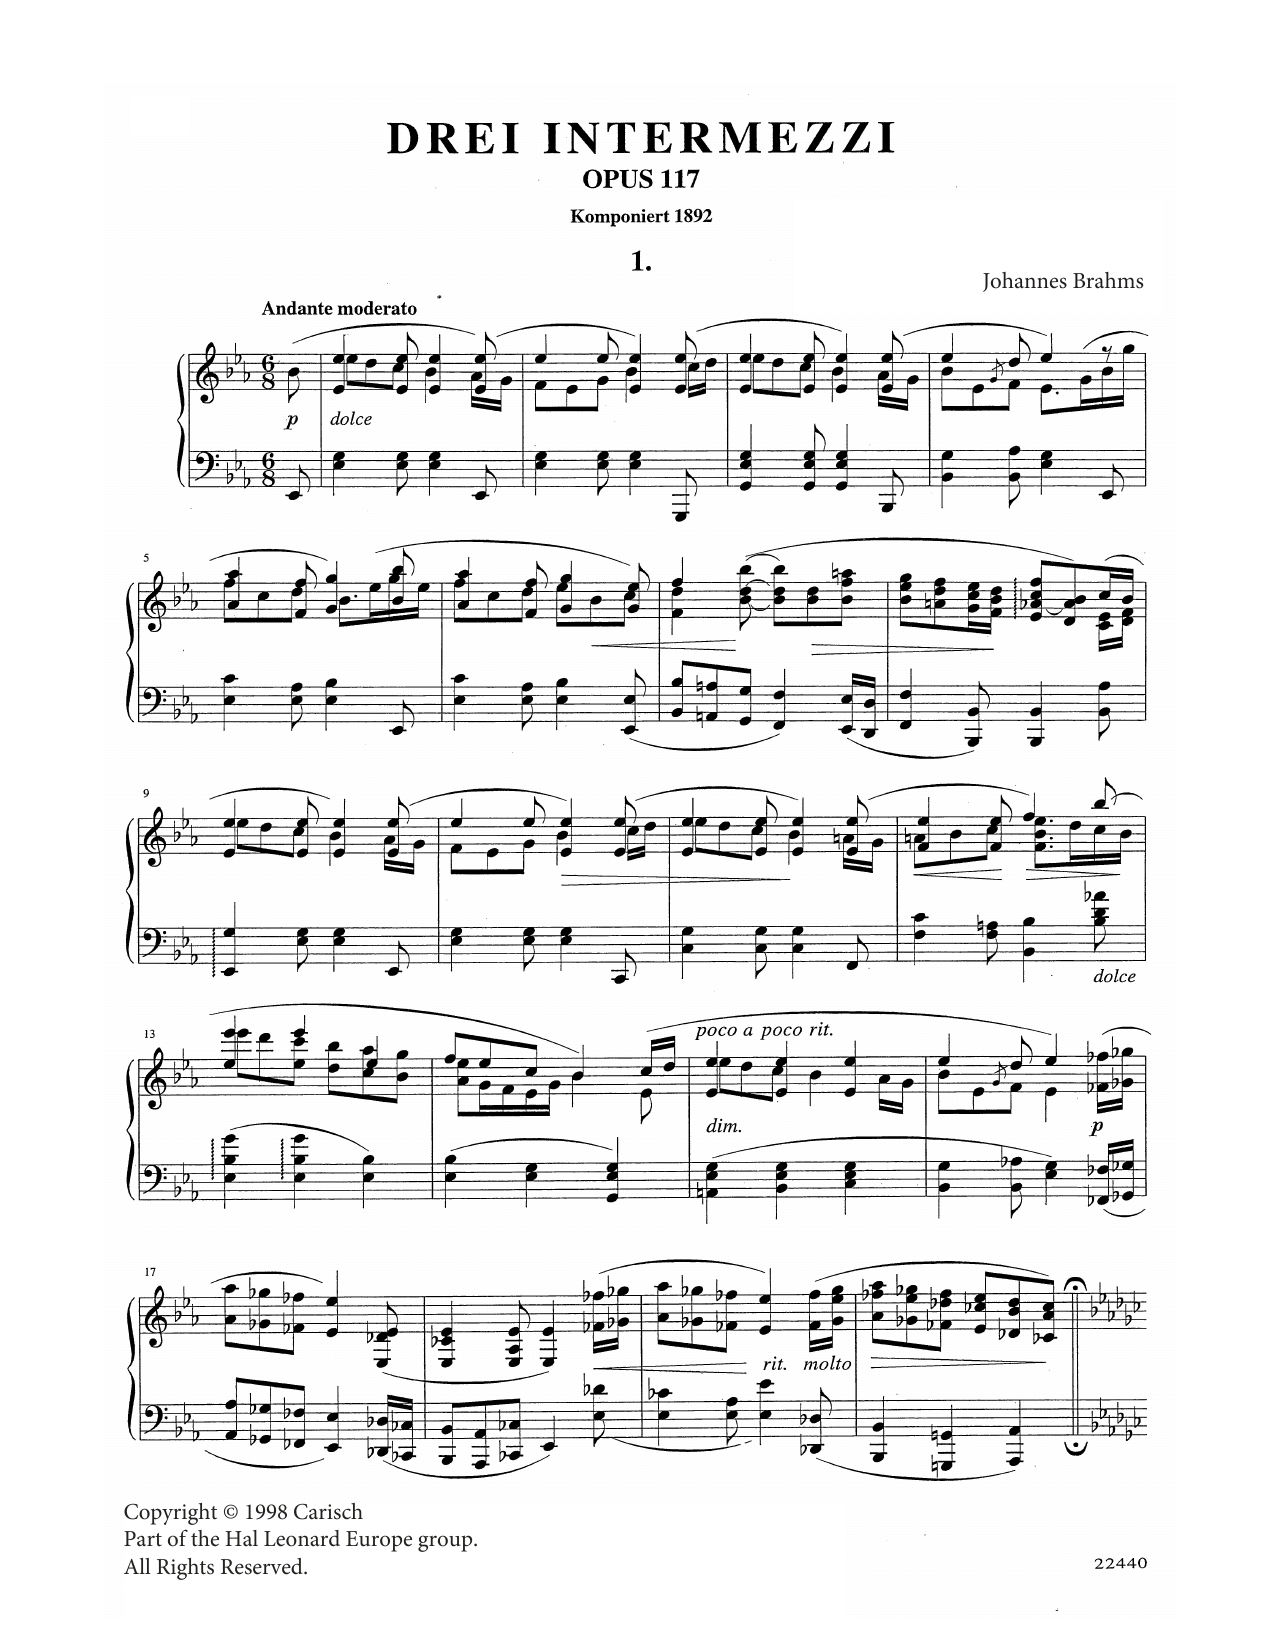 Intermezzo in E Flat Major Op. 117 No. 1 (Piano Solo) von Johannes Brahms